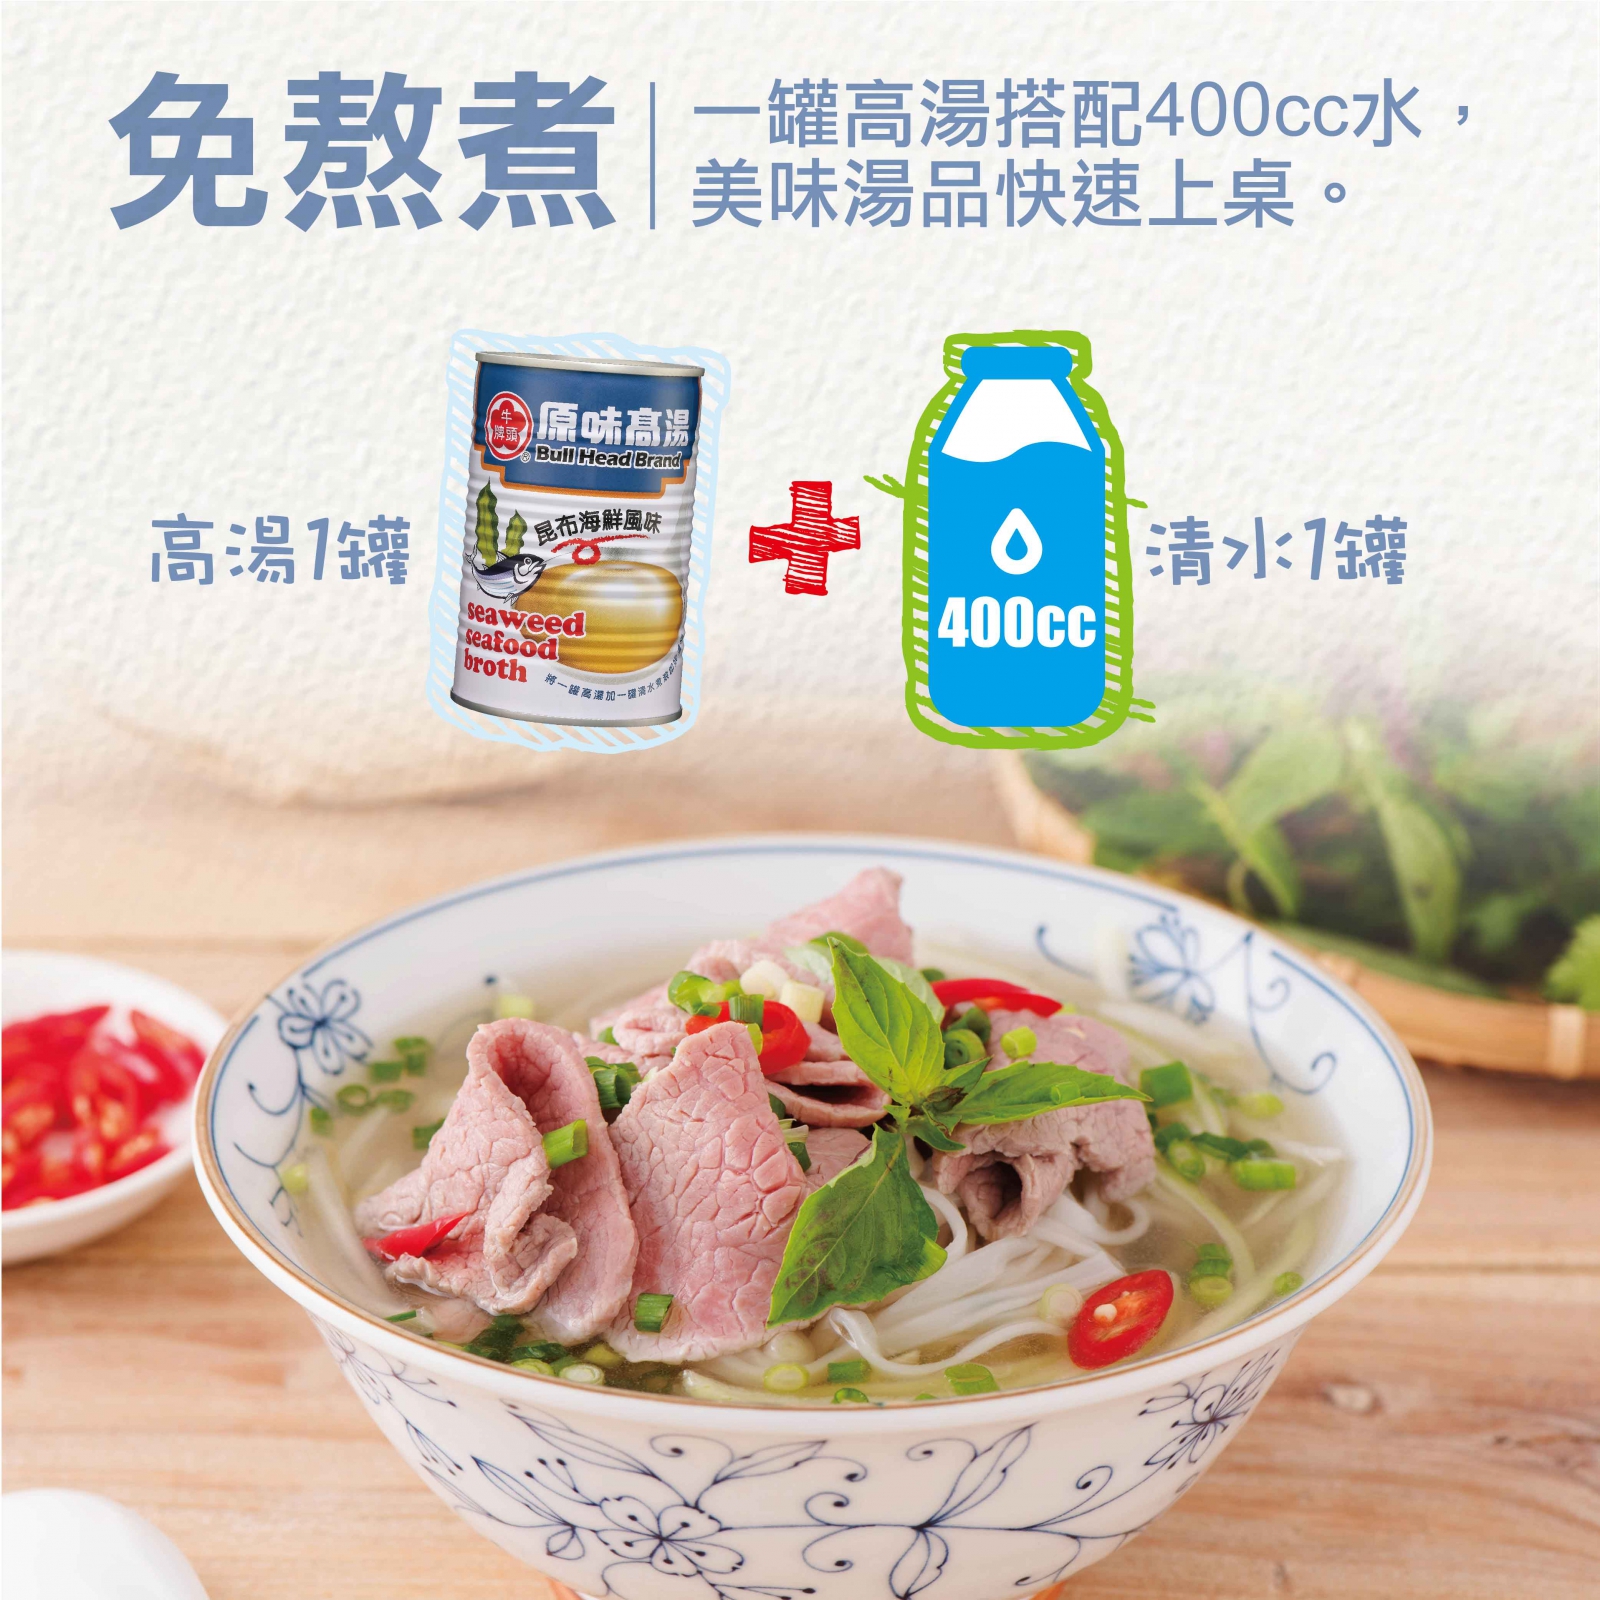 原味高湯-昆布海鮮風味411ml-1罐高湯搭配400cc水，免熬煮，美味湯品快速上桌。